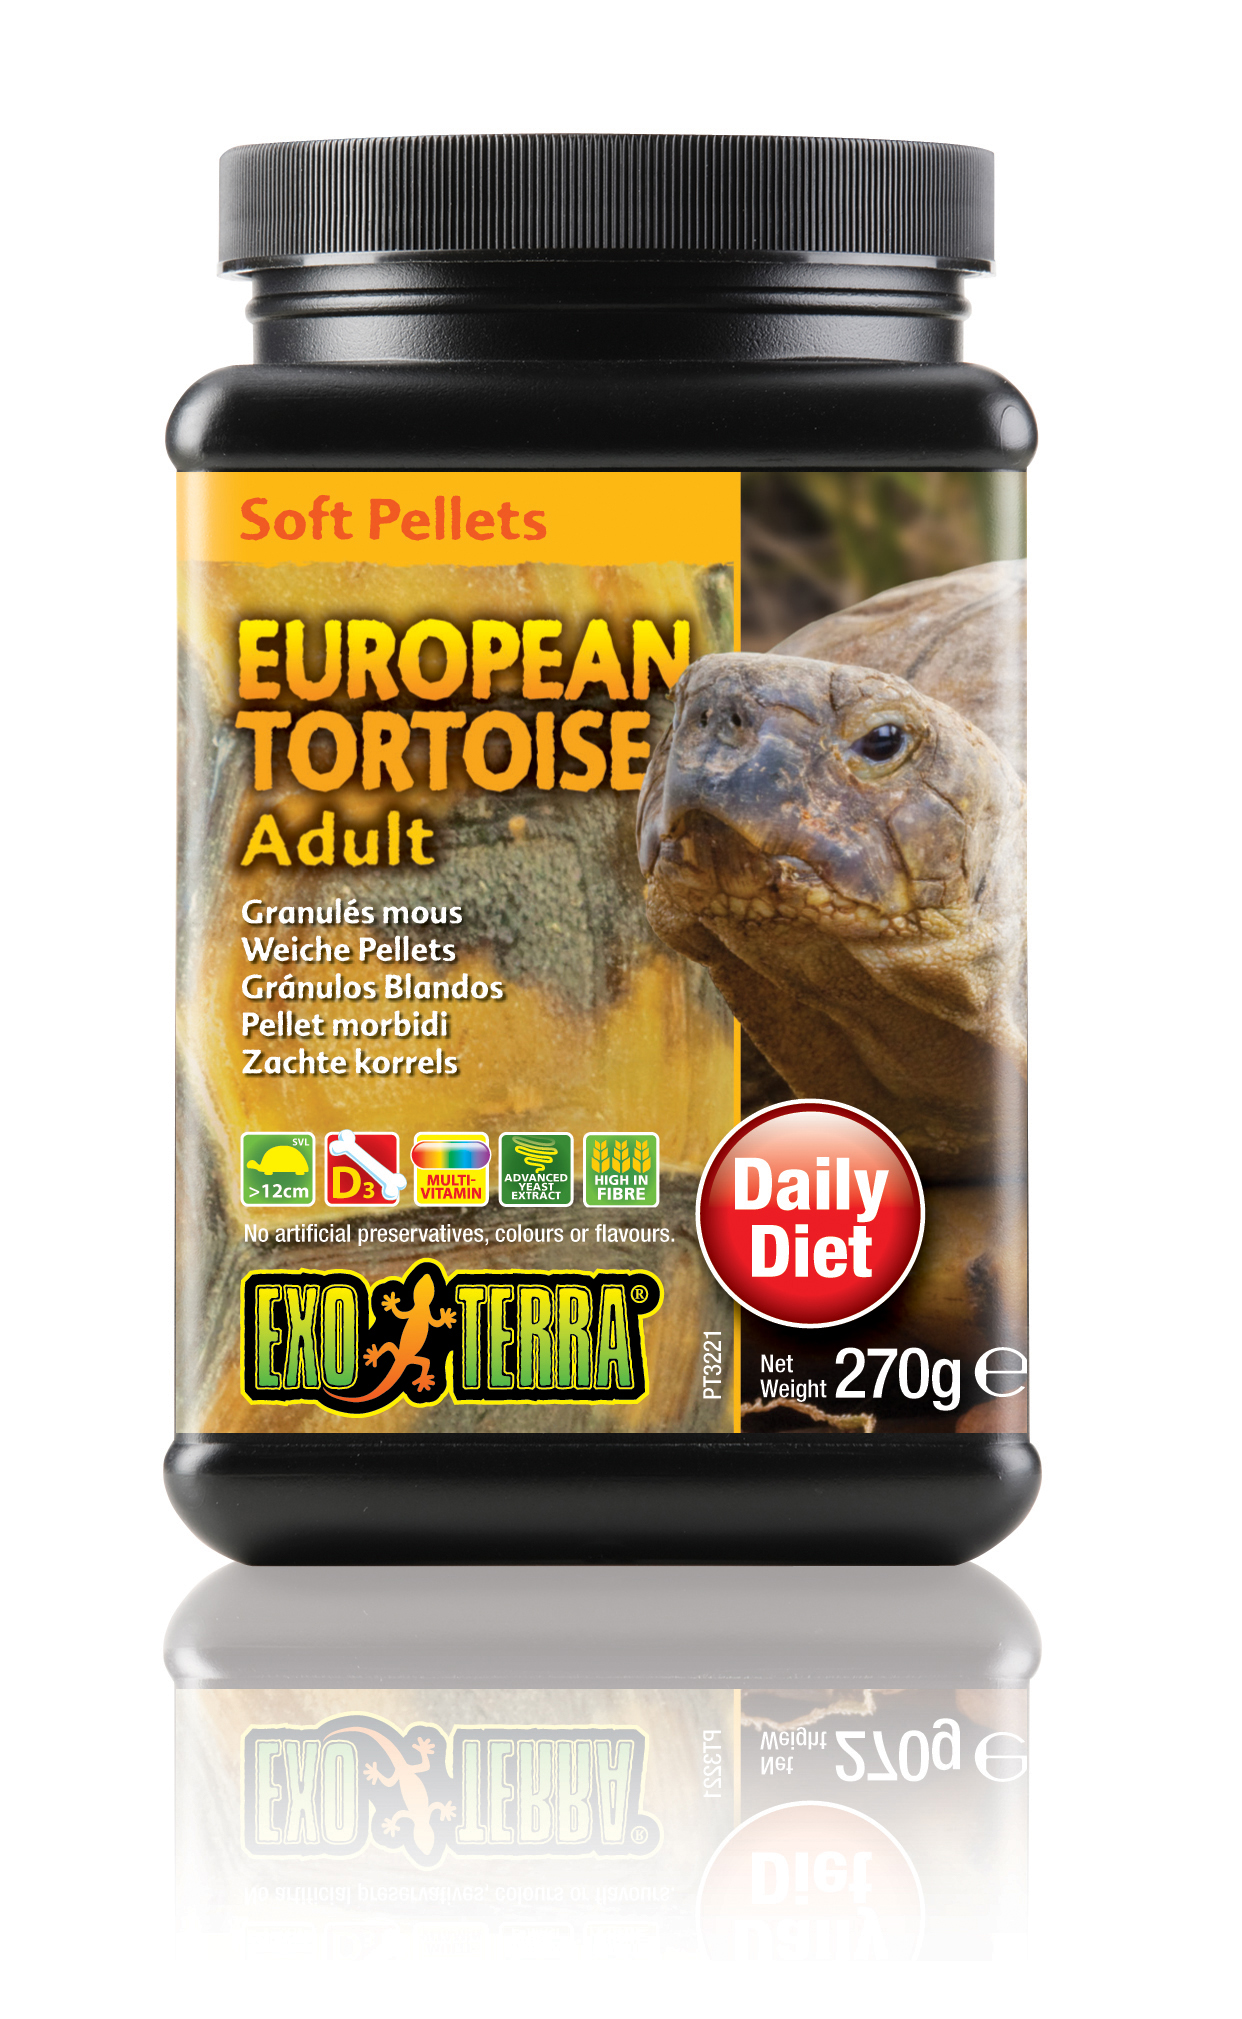 Ex soft pellets volwassen europese schildpad - <Product shot>